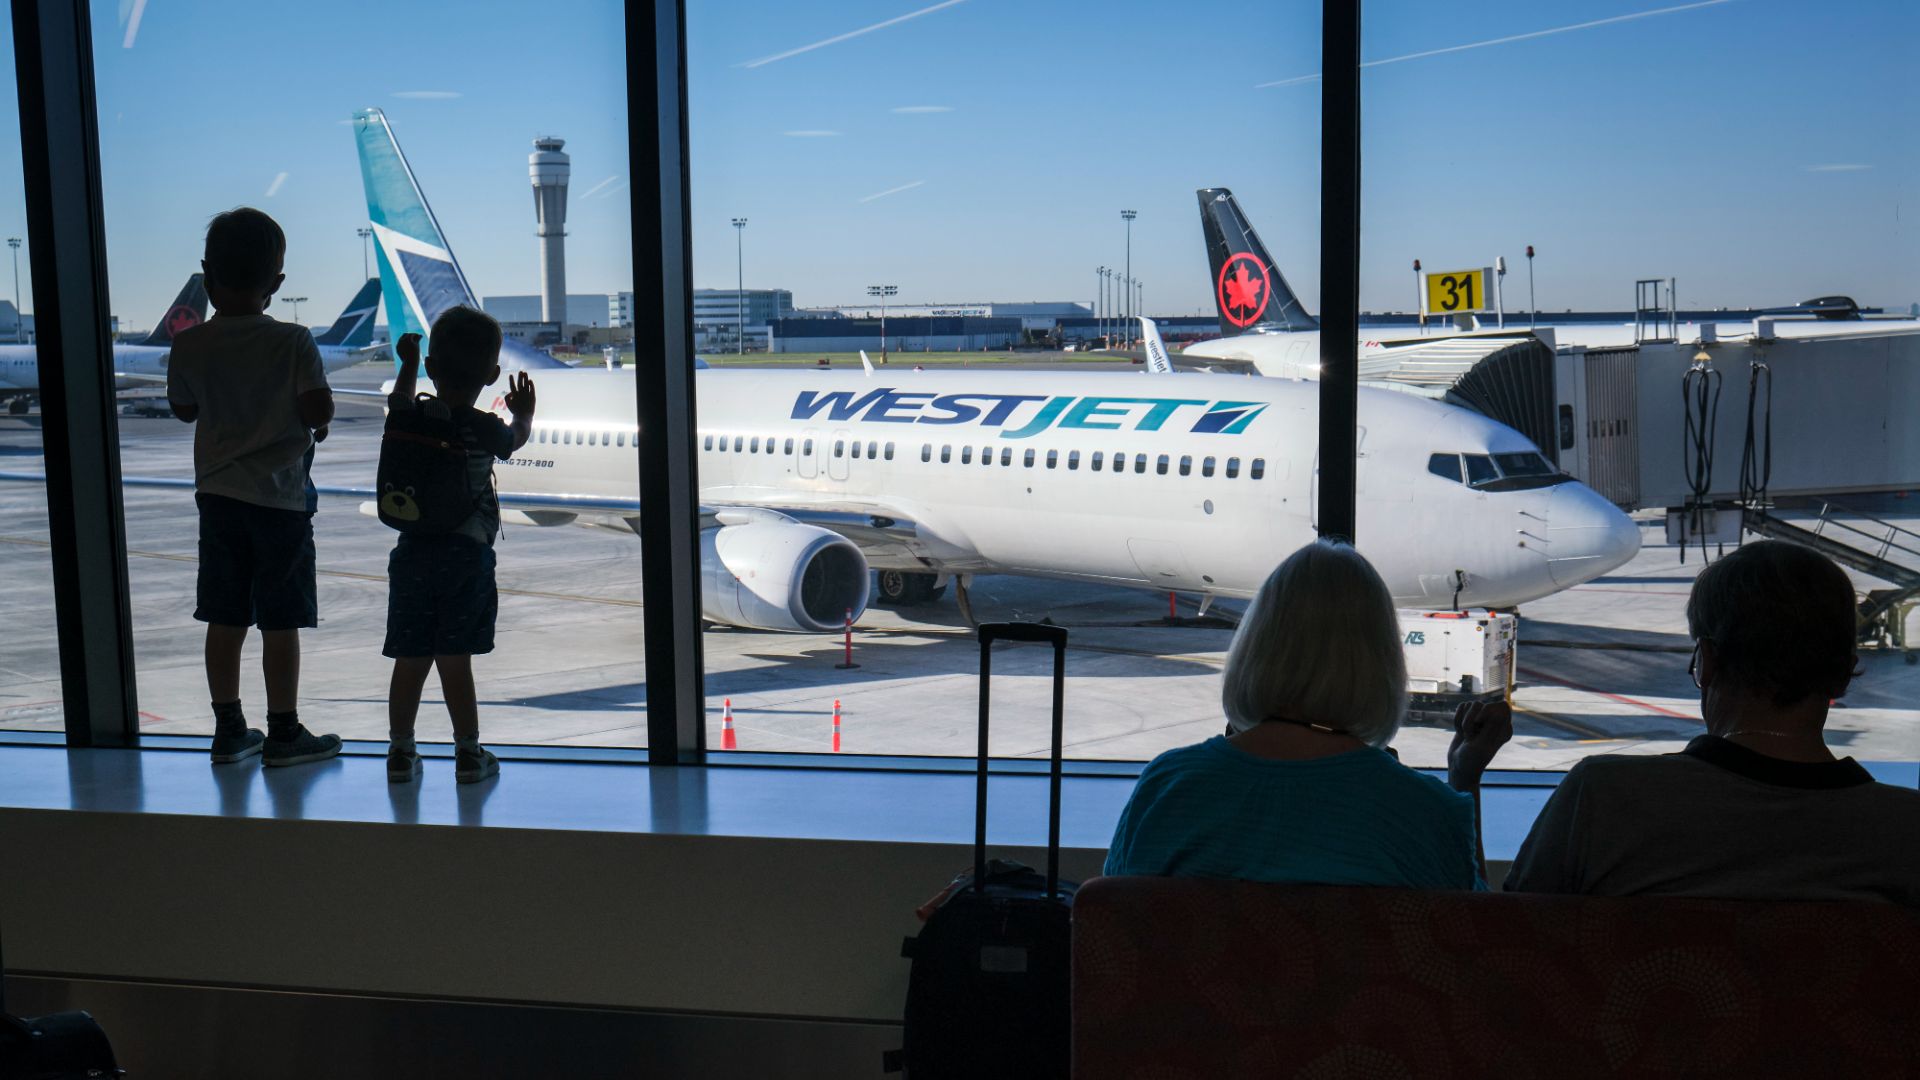 La compagnie aérienne établie à Calgary affirme que 31 autres vols sont annulés lundi en raison des conséquences de la panne combinées aux conditions hivernales.